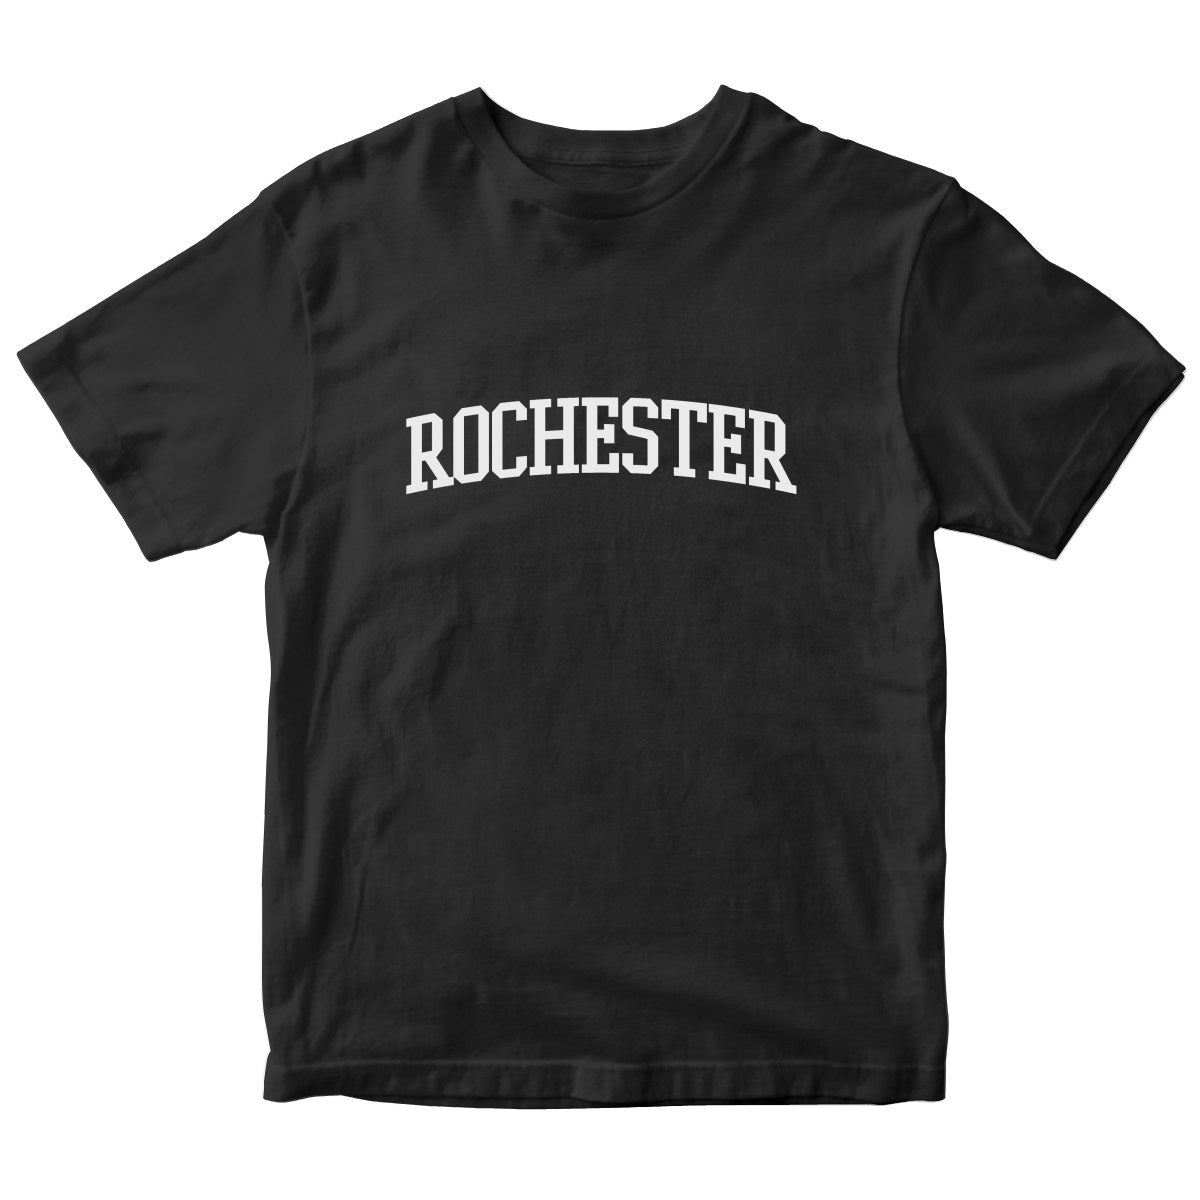 Rochester Kids T-shirt